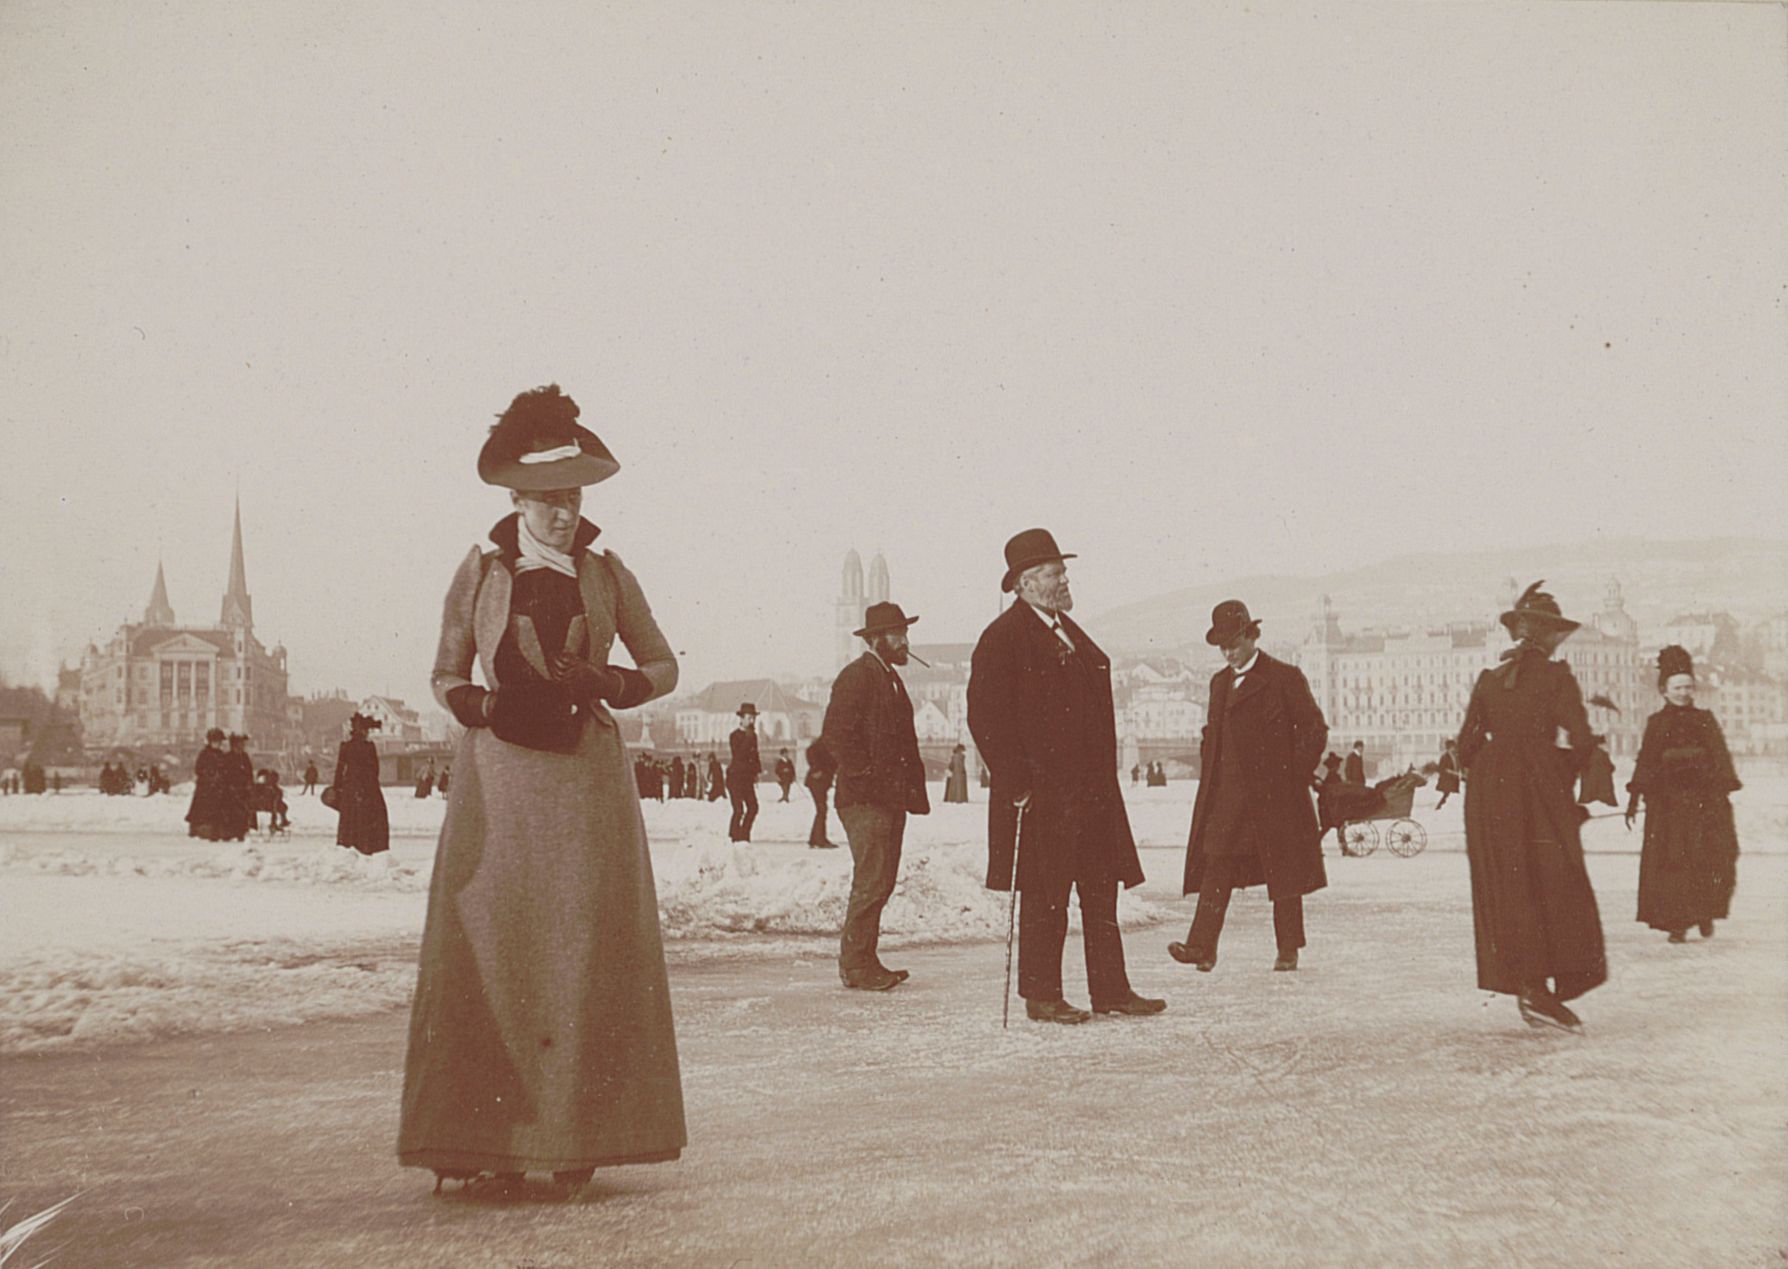 Schulpräsident Hirzel (in der Bildmitte) samt Spaziergängern und Schlittschuhläufern auf dem gefrorenen Zürichsee im Jahr 1891. Fotografie, Silbergelatineabzug, 8,1 x 11,4 cm. 